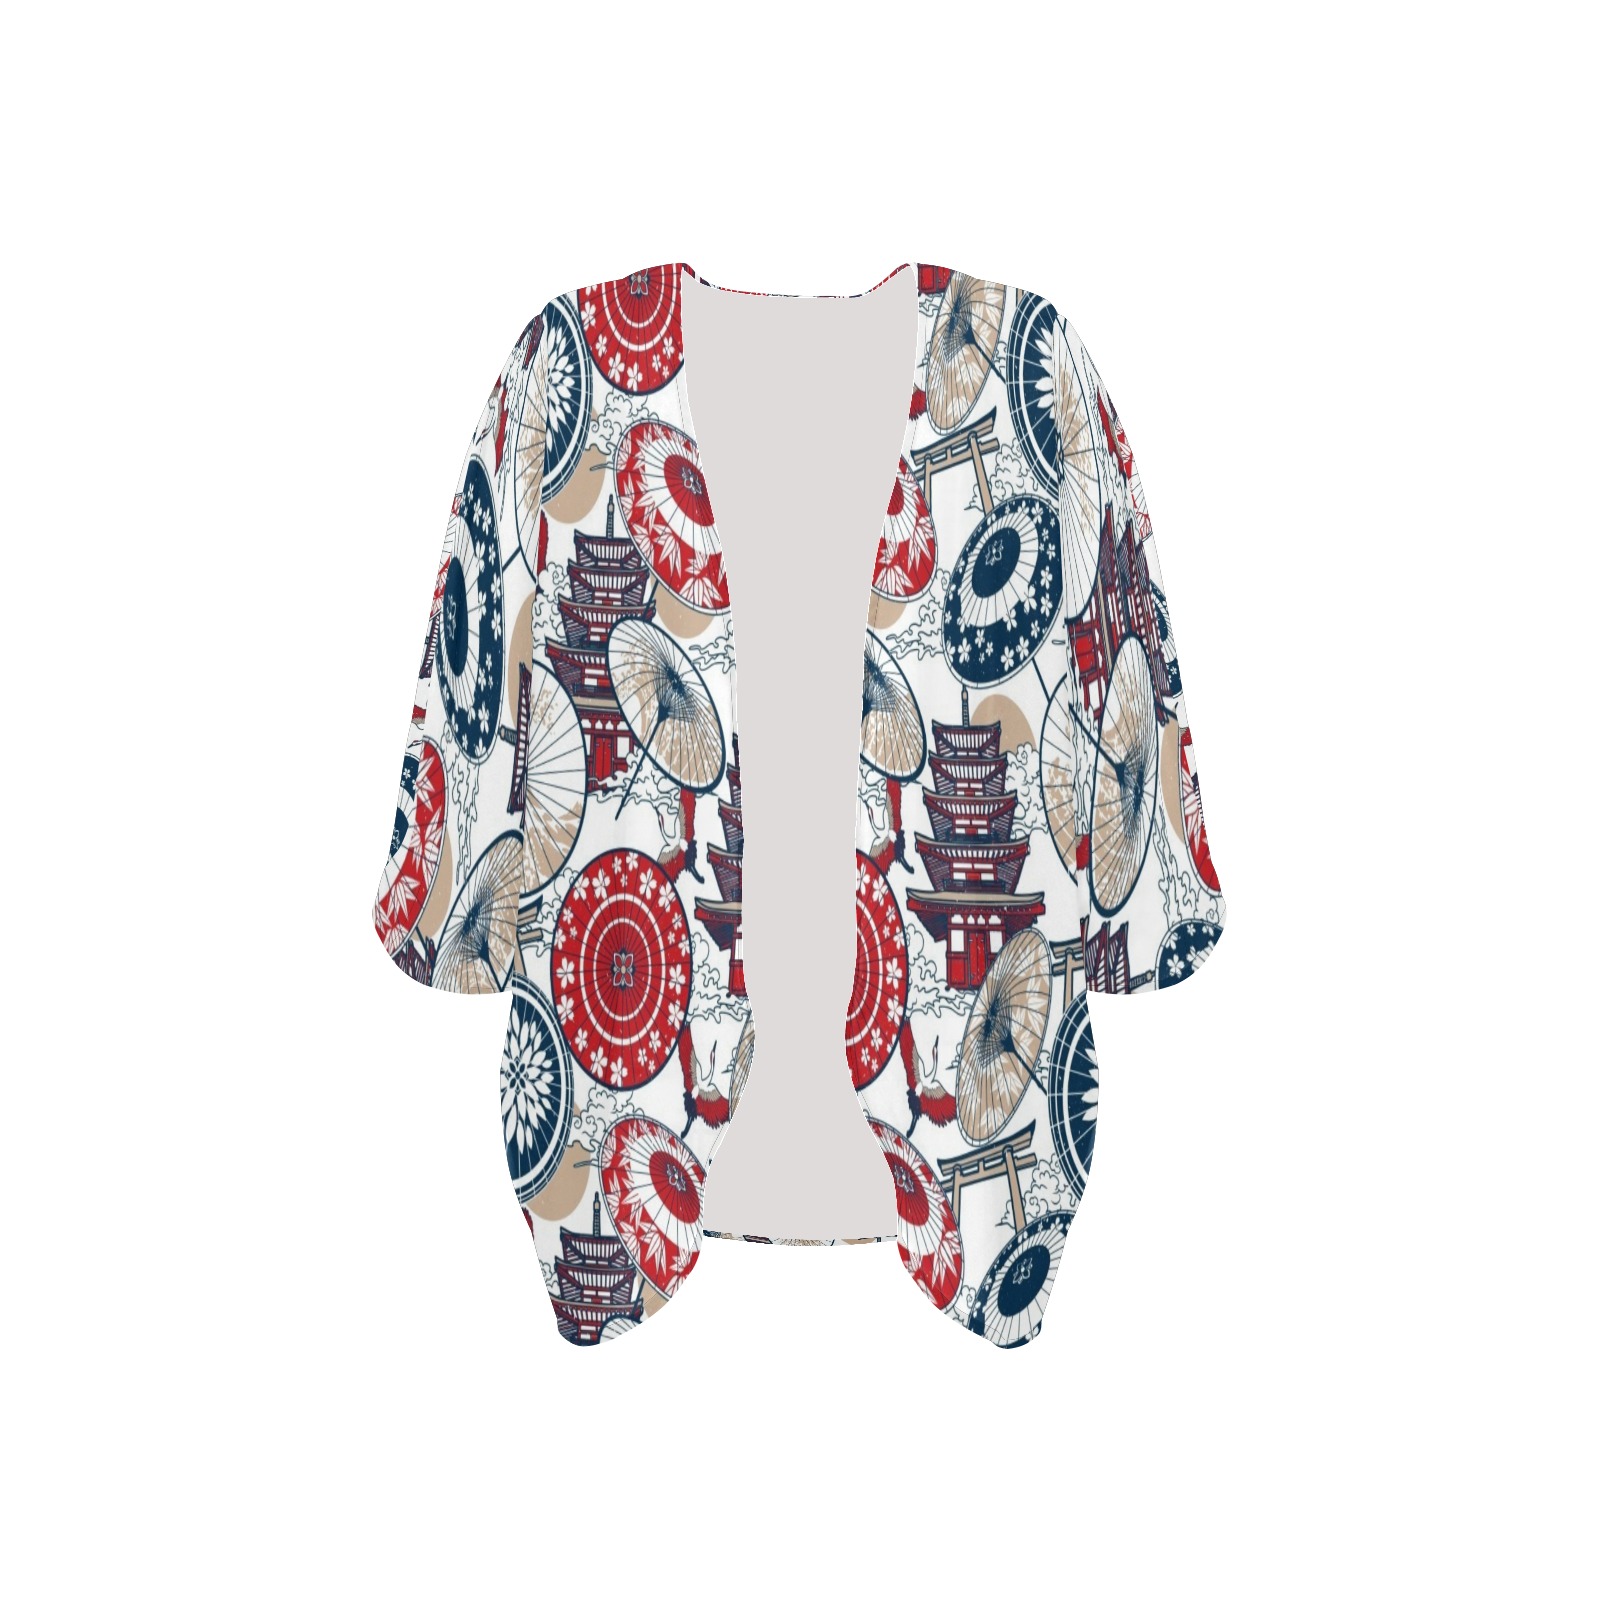 UMBRELLA 0004 Women's Kimono Chiffon Cover Ups (Model H51)